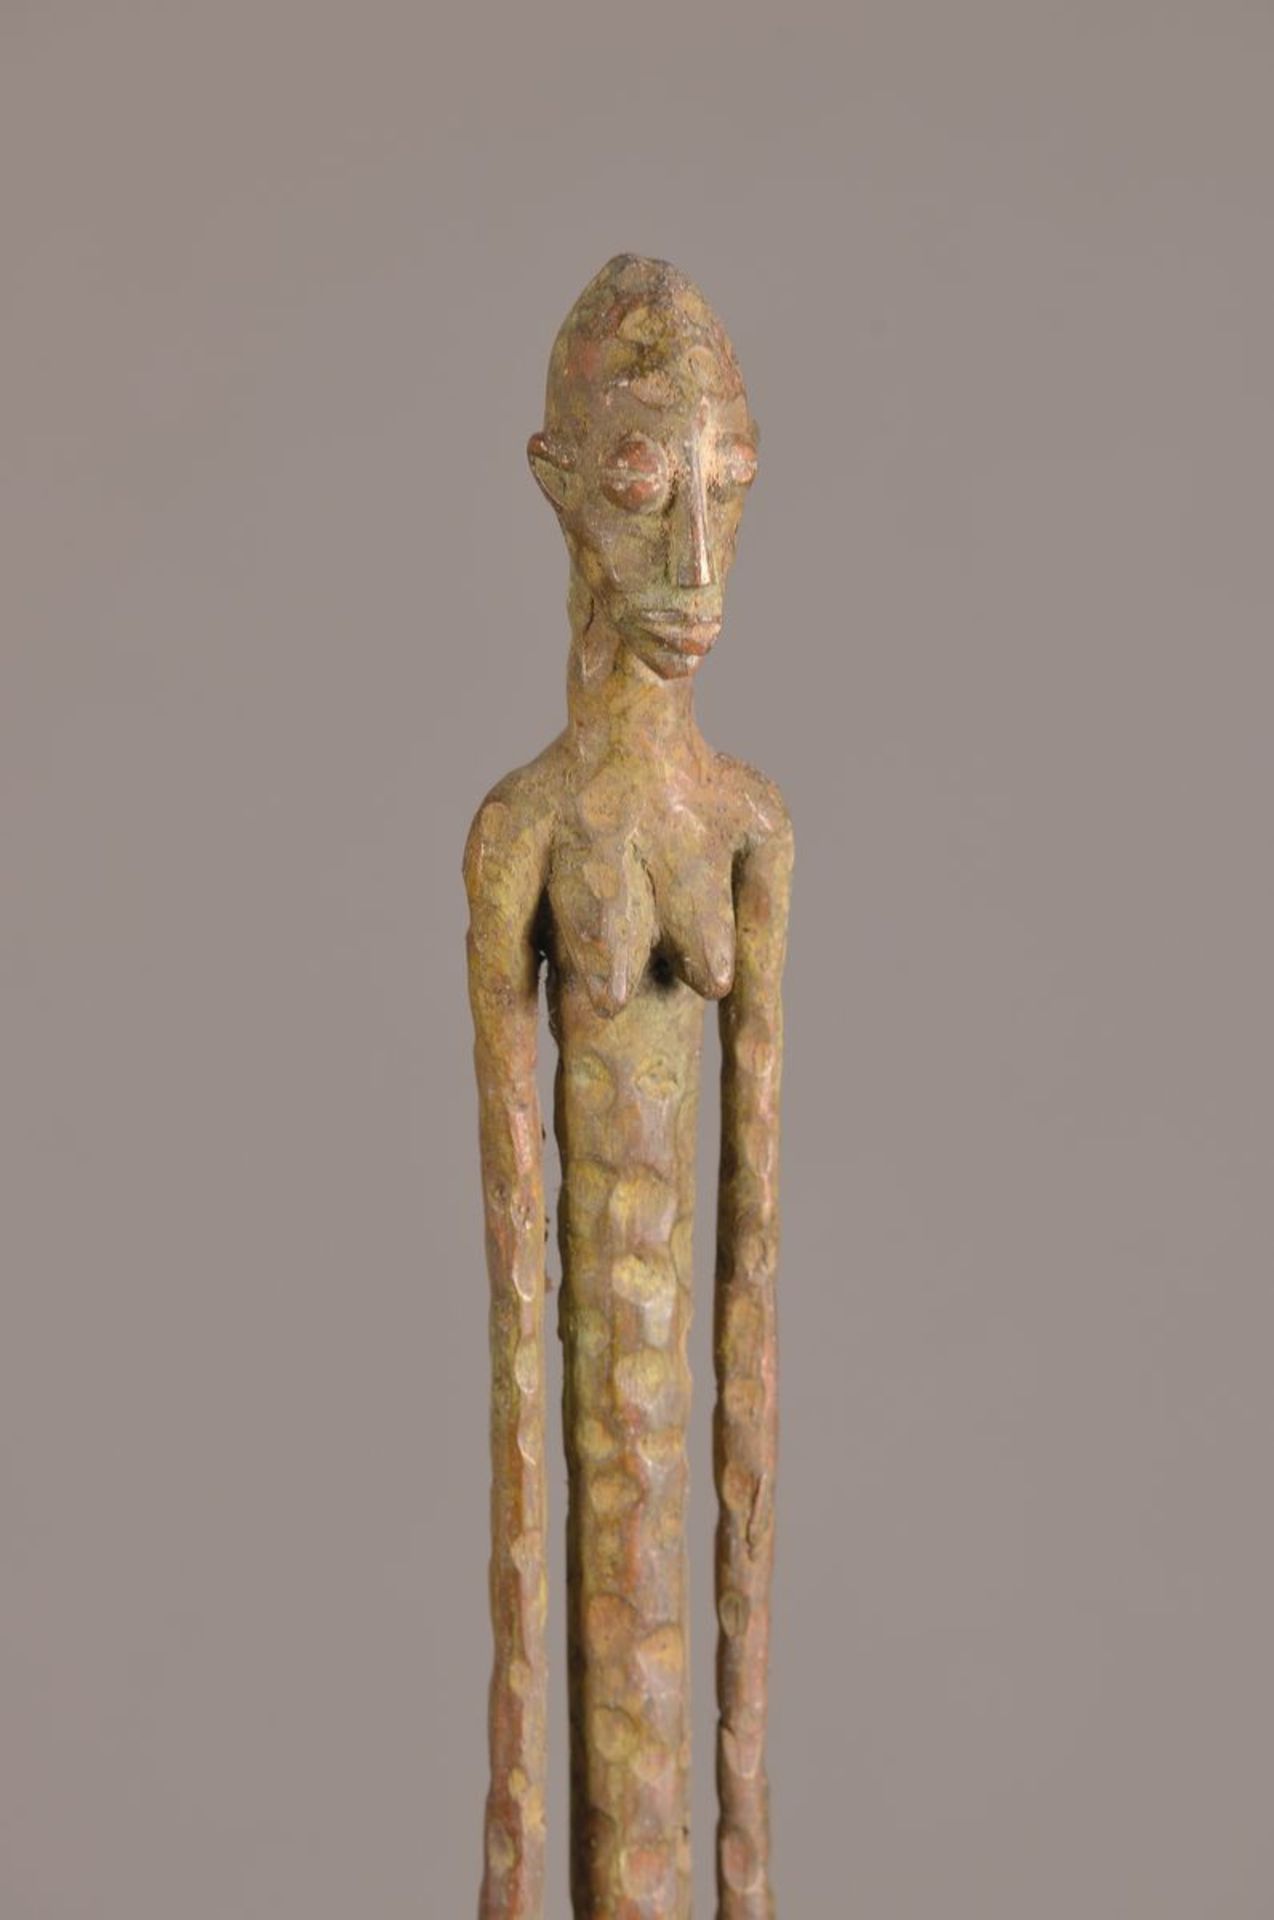 Ahnenskulptur der Dogon, Mali, ca. 50 Jahre alt, Bronze, stehende weibliche Figur, - Bild 3 aus 3